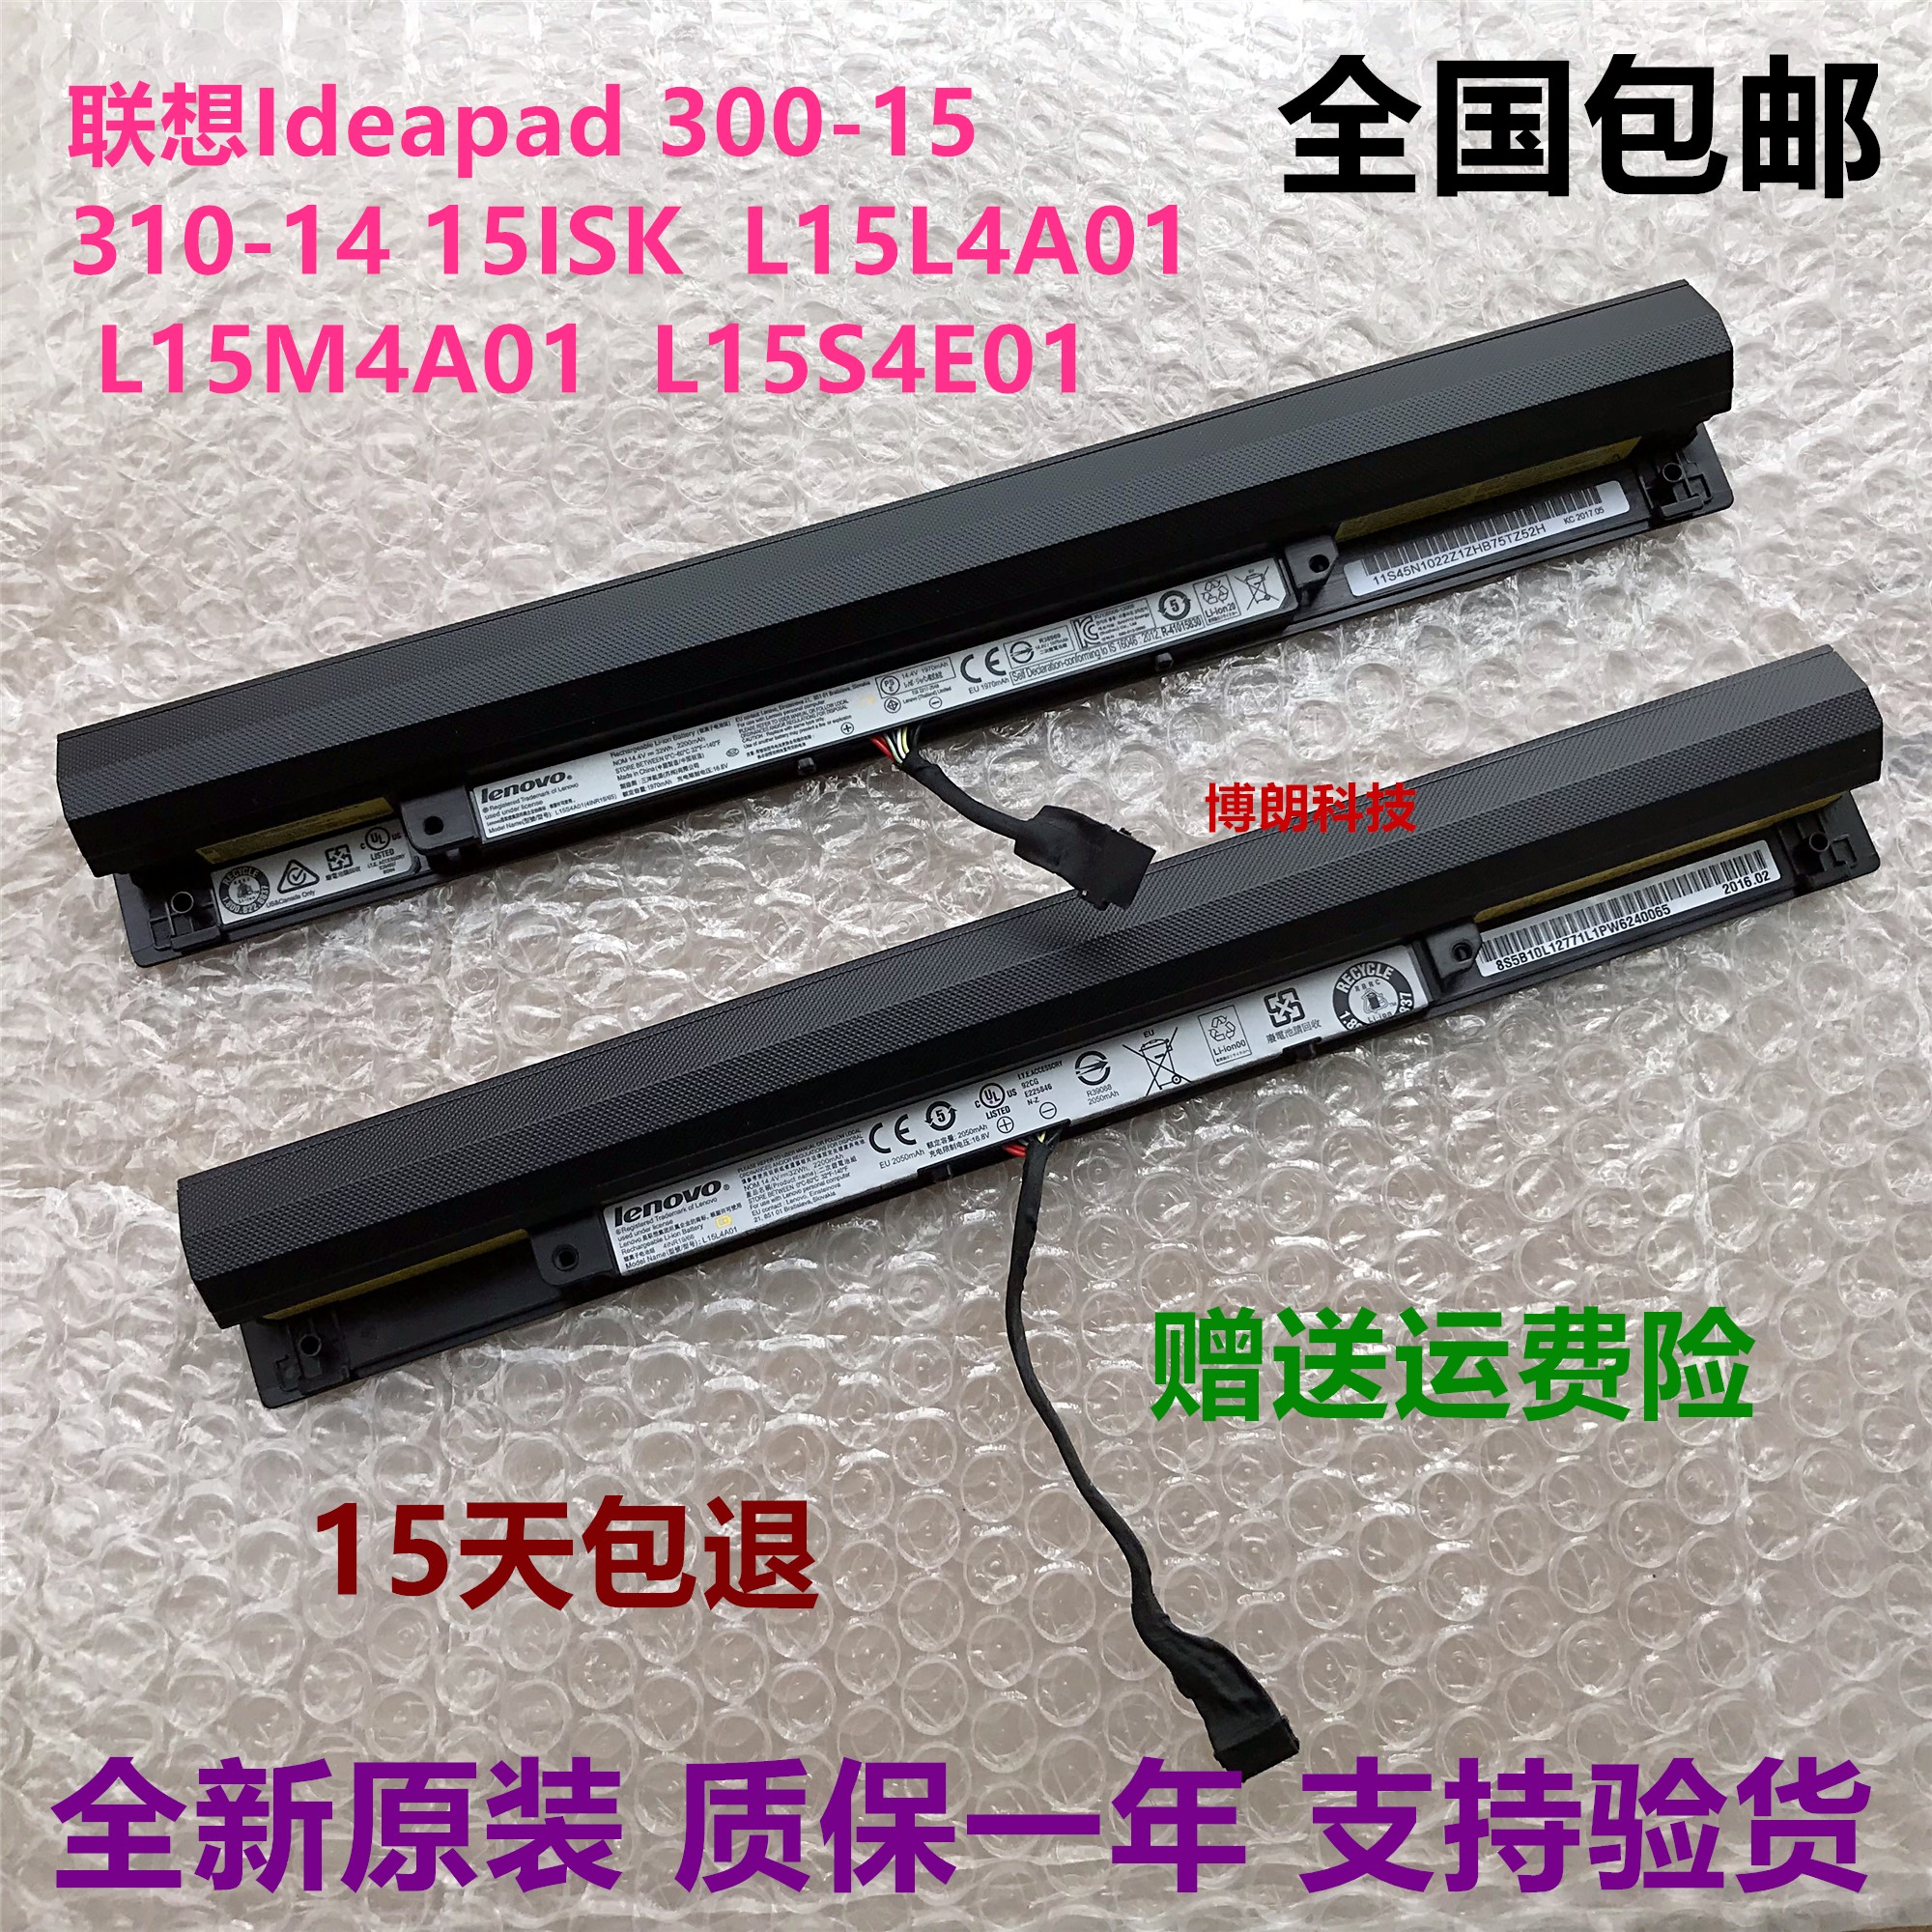 原装联想Ideapad天逸100 300-15-17 v4400 L15L4A01 L15L4E01电池